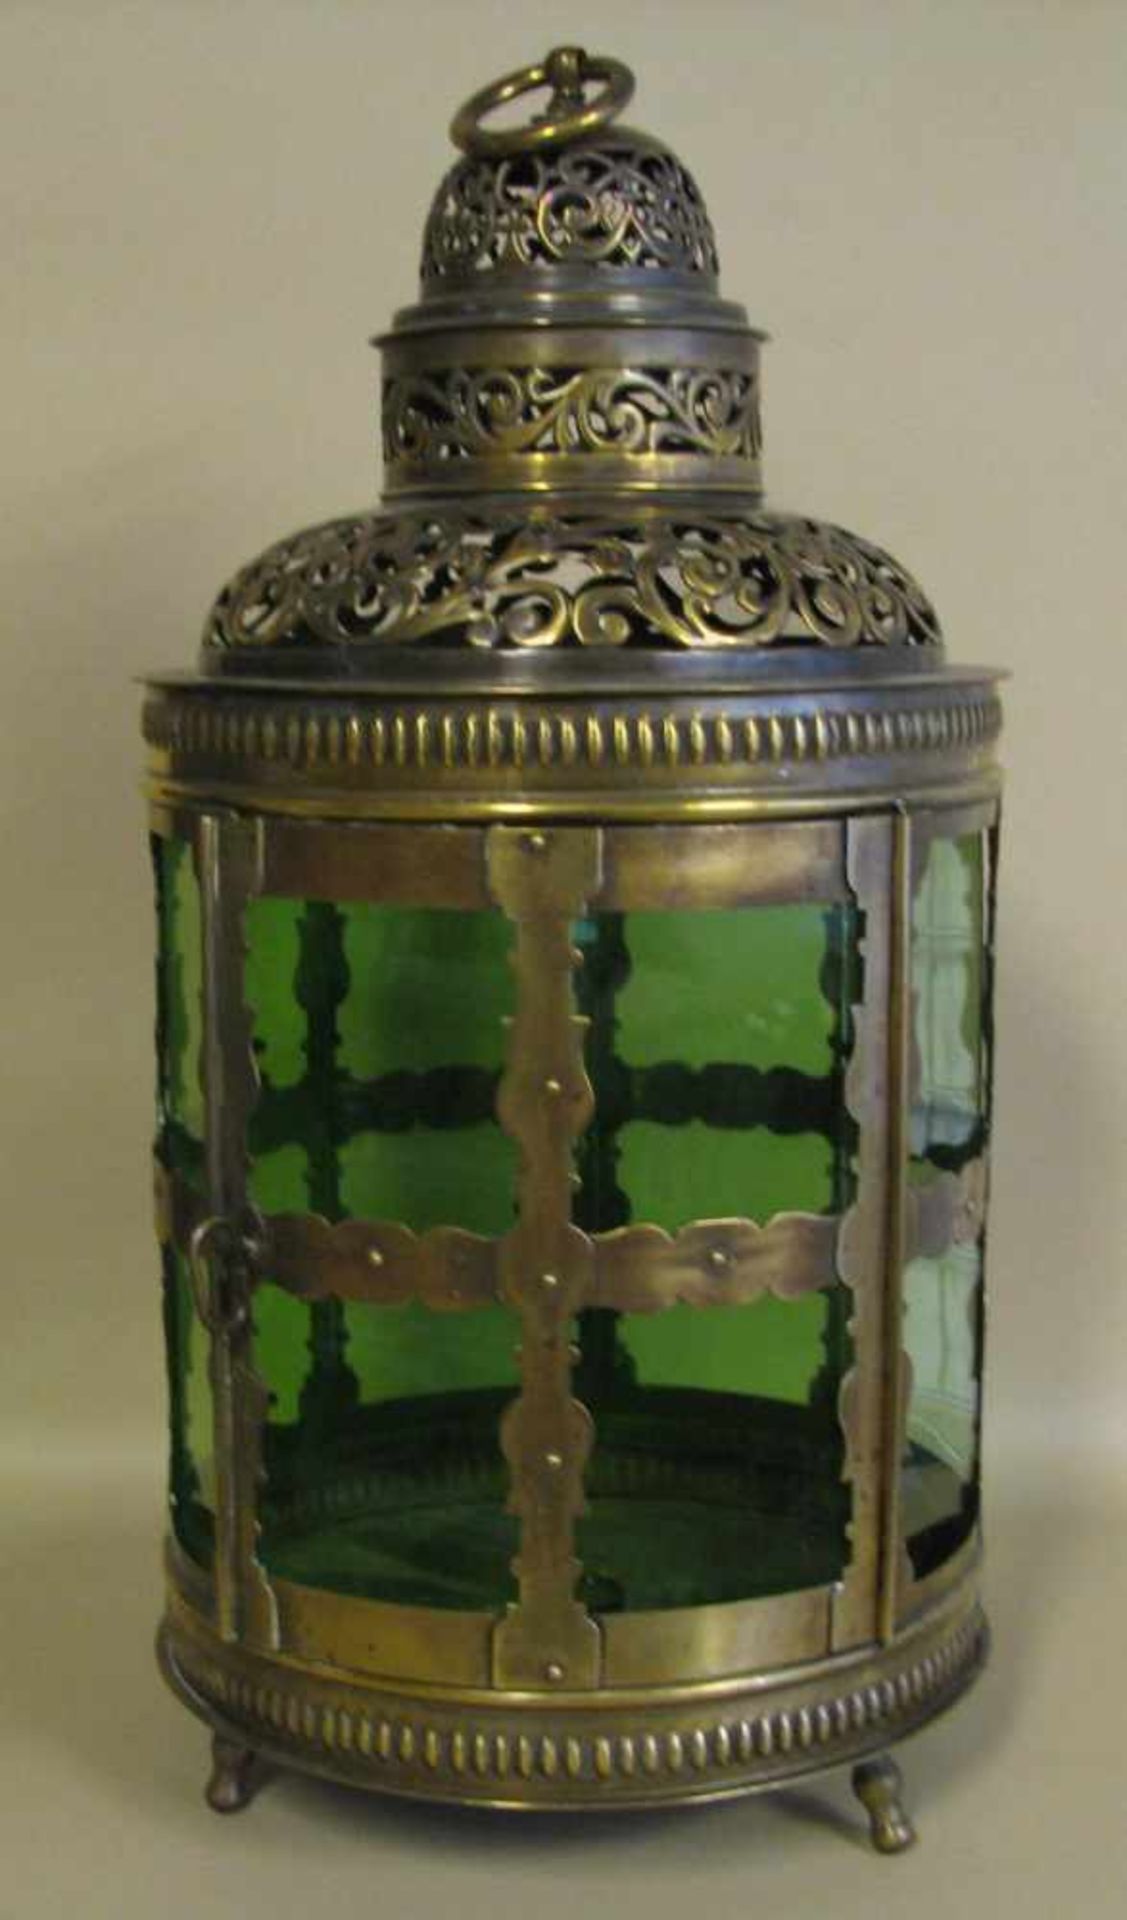 Flurlampe, 19. Jahrhundert, Messing reich verziert, h 50 cm, d 24 cm.